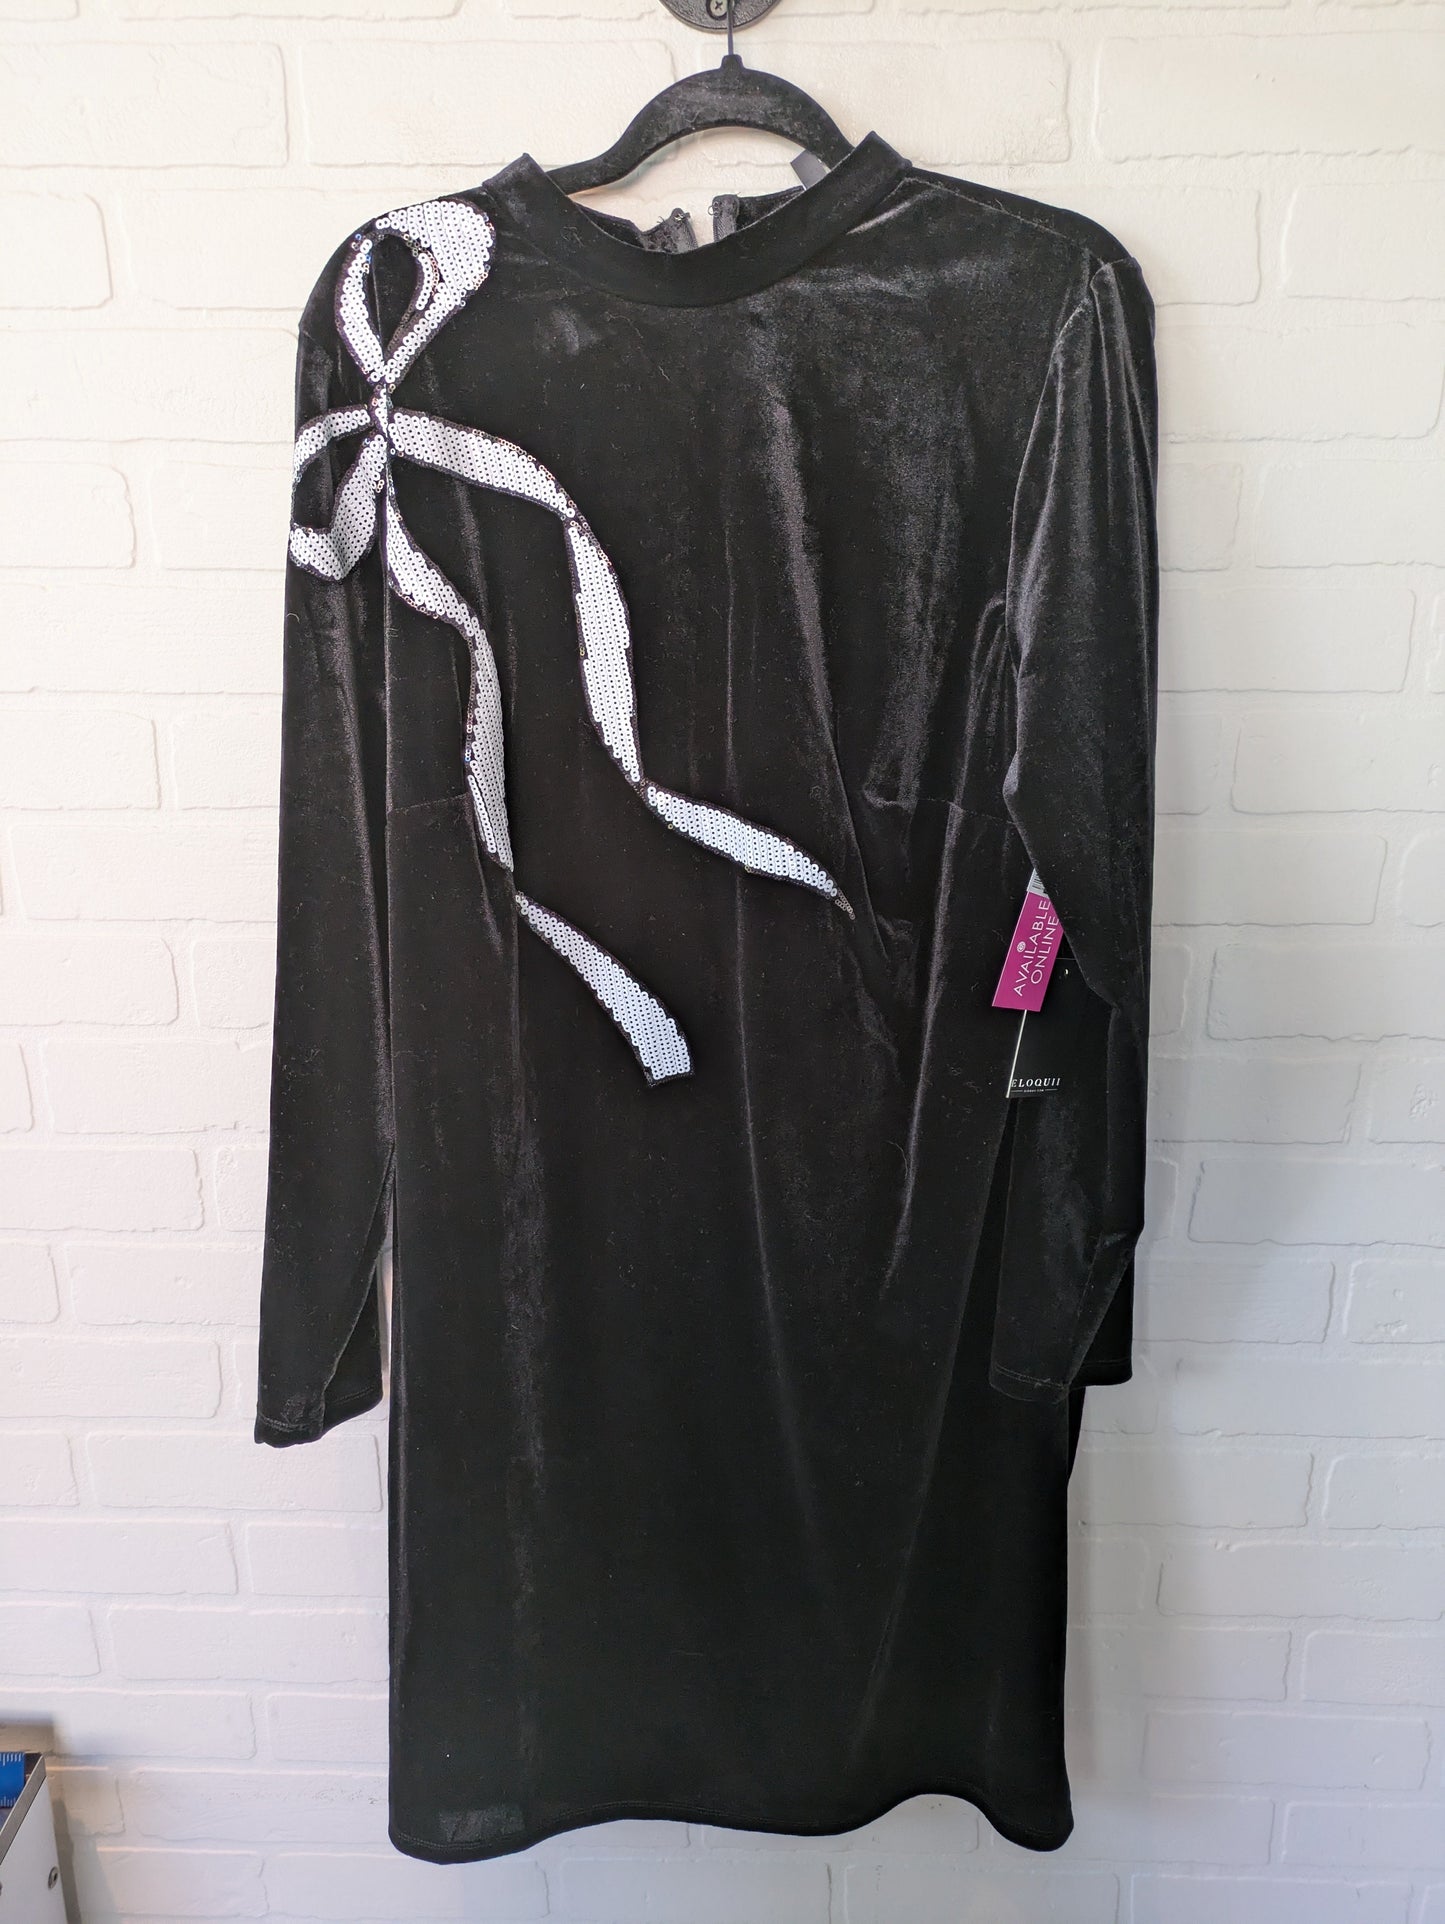 Black & White Dress Party Midi Eloquii, Size 1x